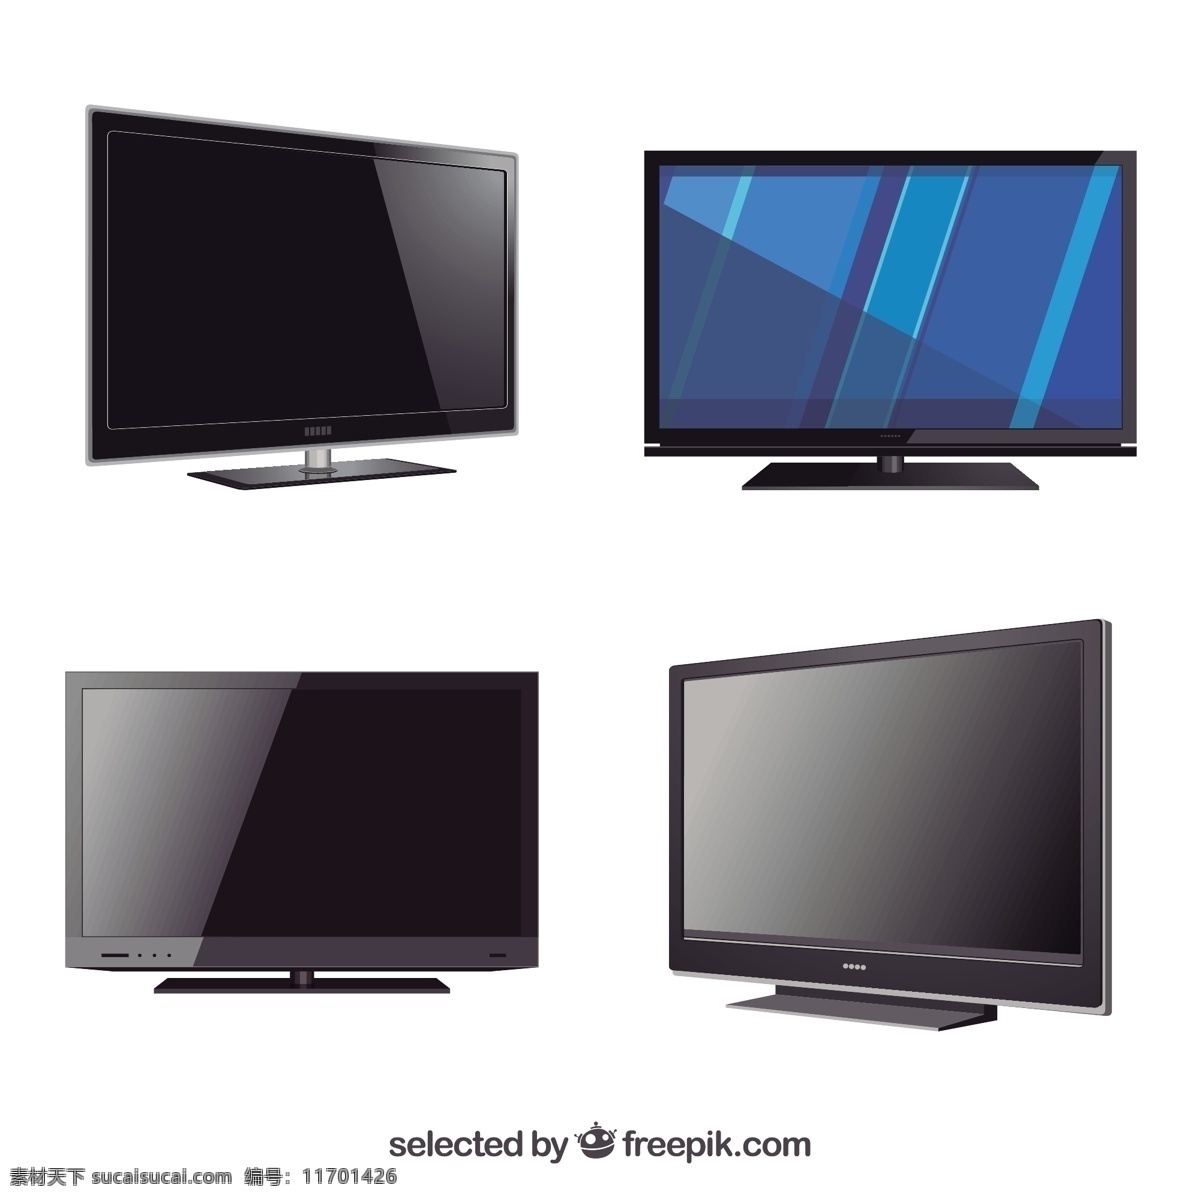 电视机 技术 家庭 电视 数字电视 电子 屏幕 发光二极管 显示器 液晶电视 等离子电视 白色